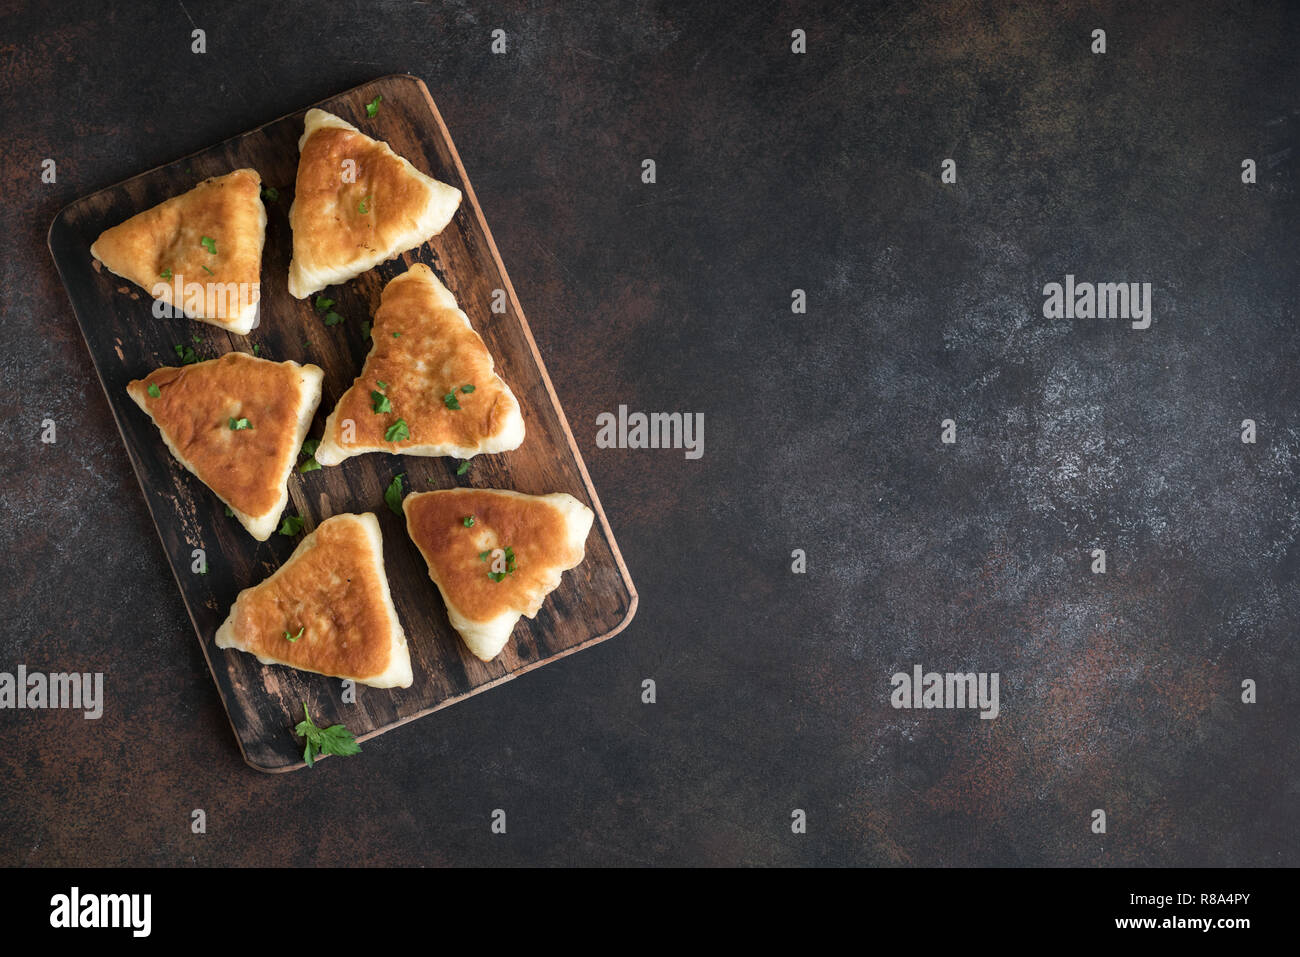 Frittierte Fleischpasteten, samsa, Samosas, echpochmak - traditionelle Fleisch oder vegetarisch gefüllte Pasteten Pasteten auf rustikalen Hintergrund, kopieren. Stockfoto